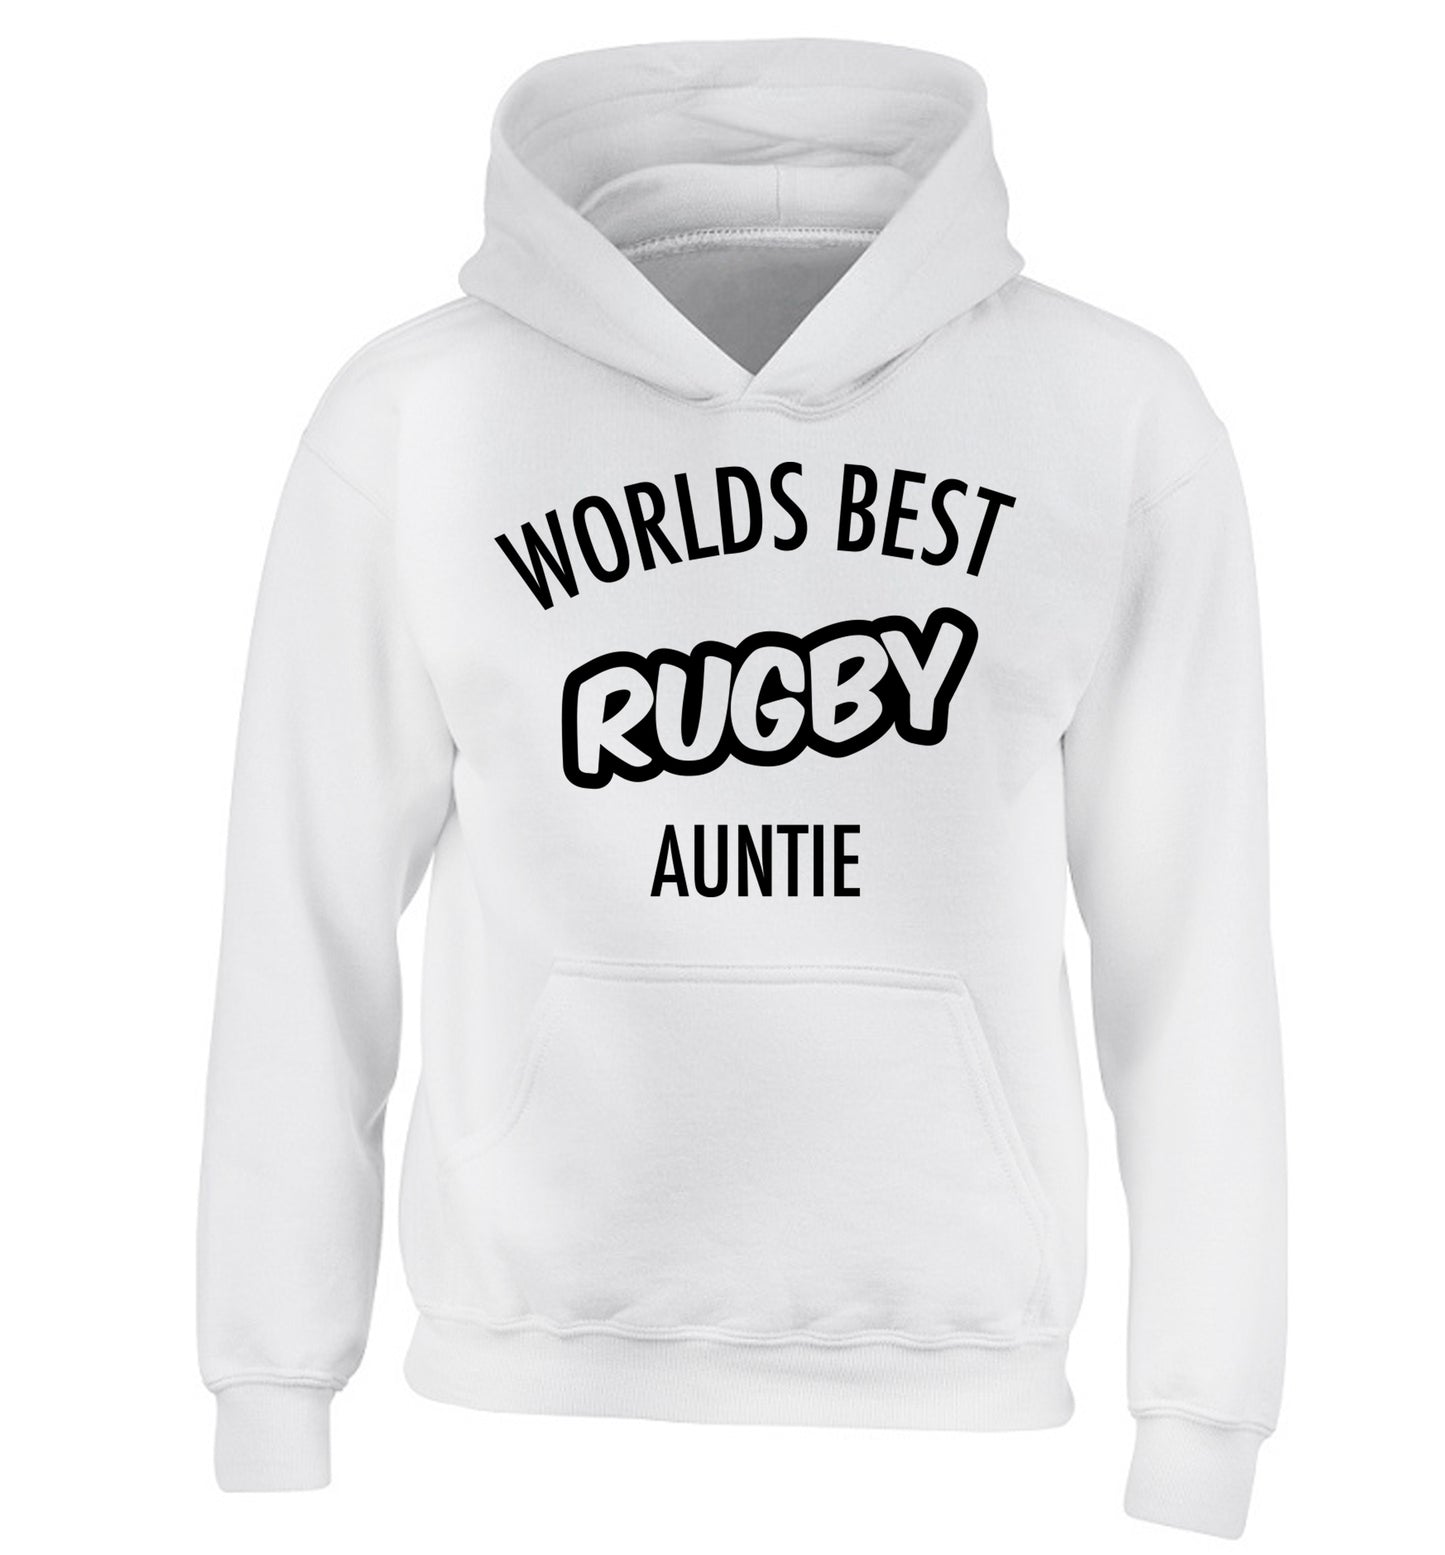 Worlds best rugby auntie children's white hoodie 12-13 Years